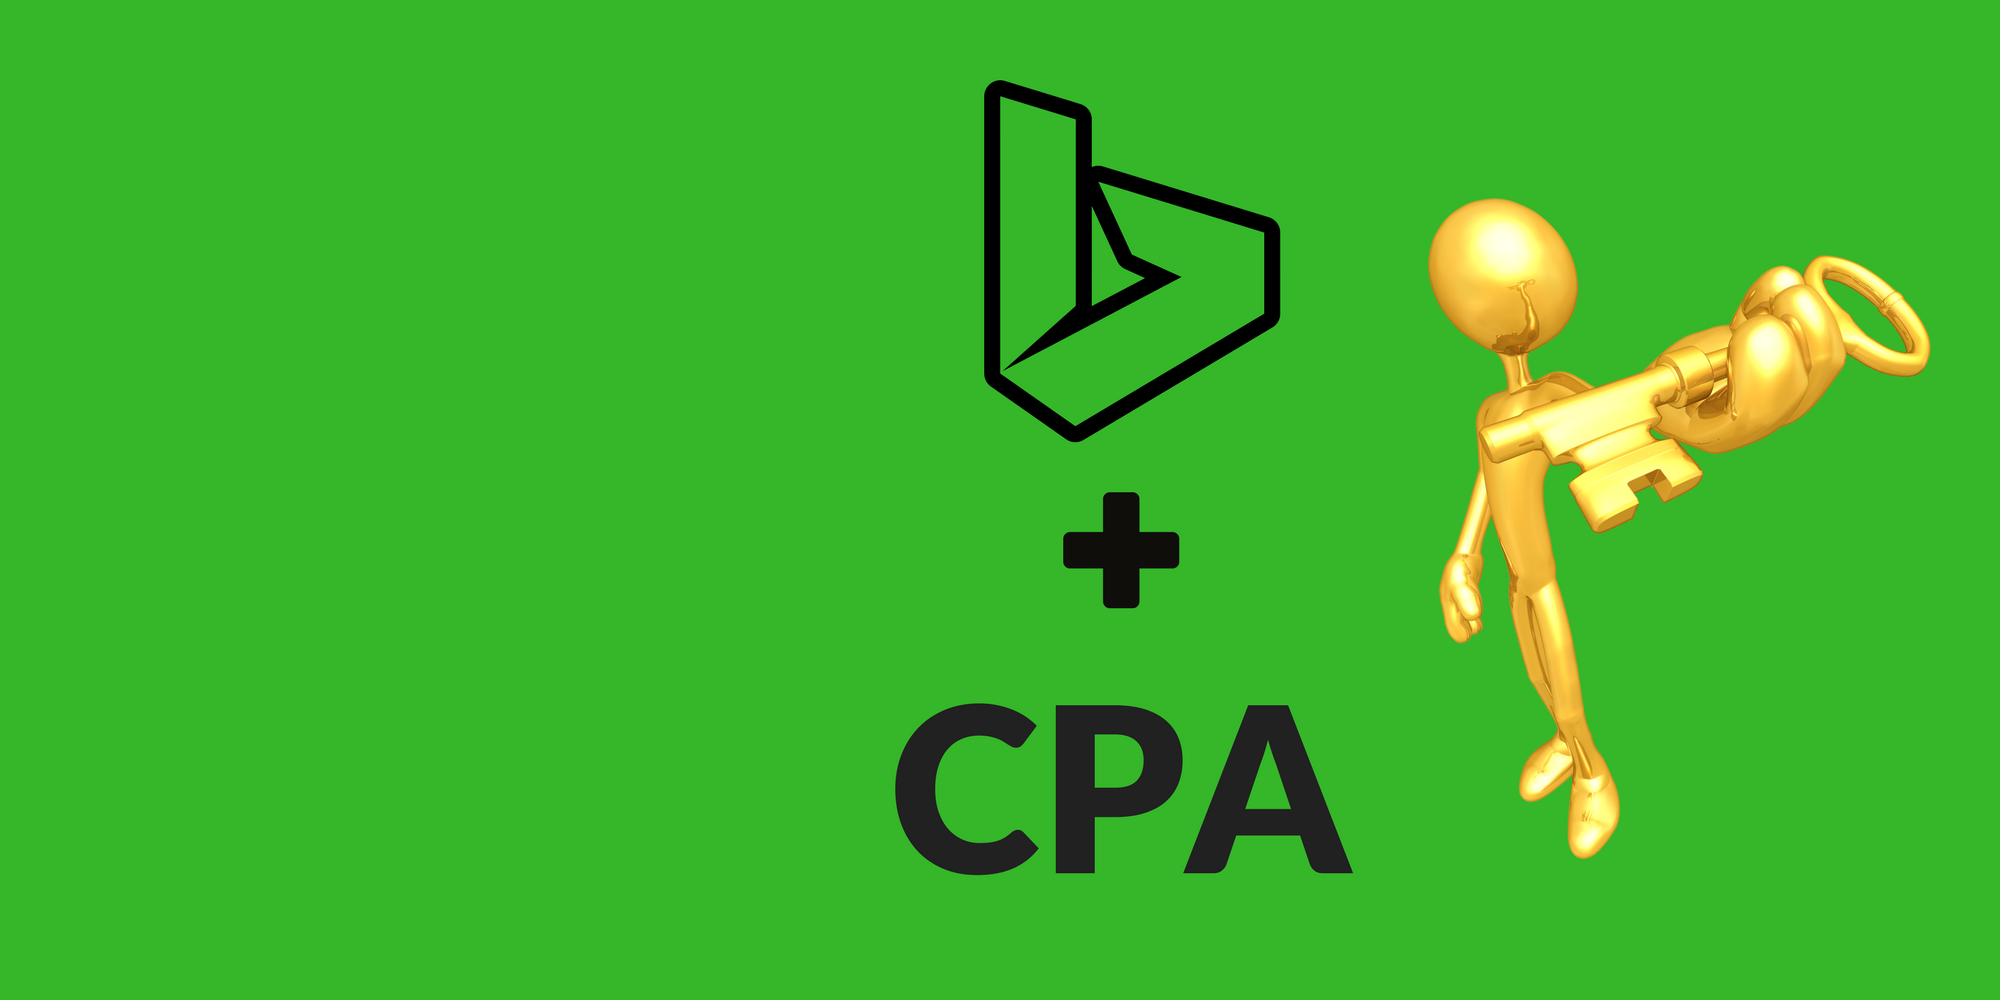 CPA партнерки. Сра формула маркетинг. CPA формула. CPA модель. Cpa в маркетинге